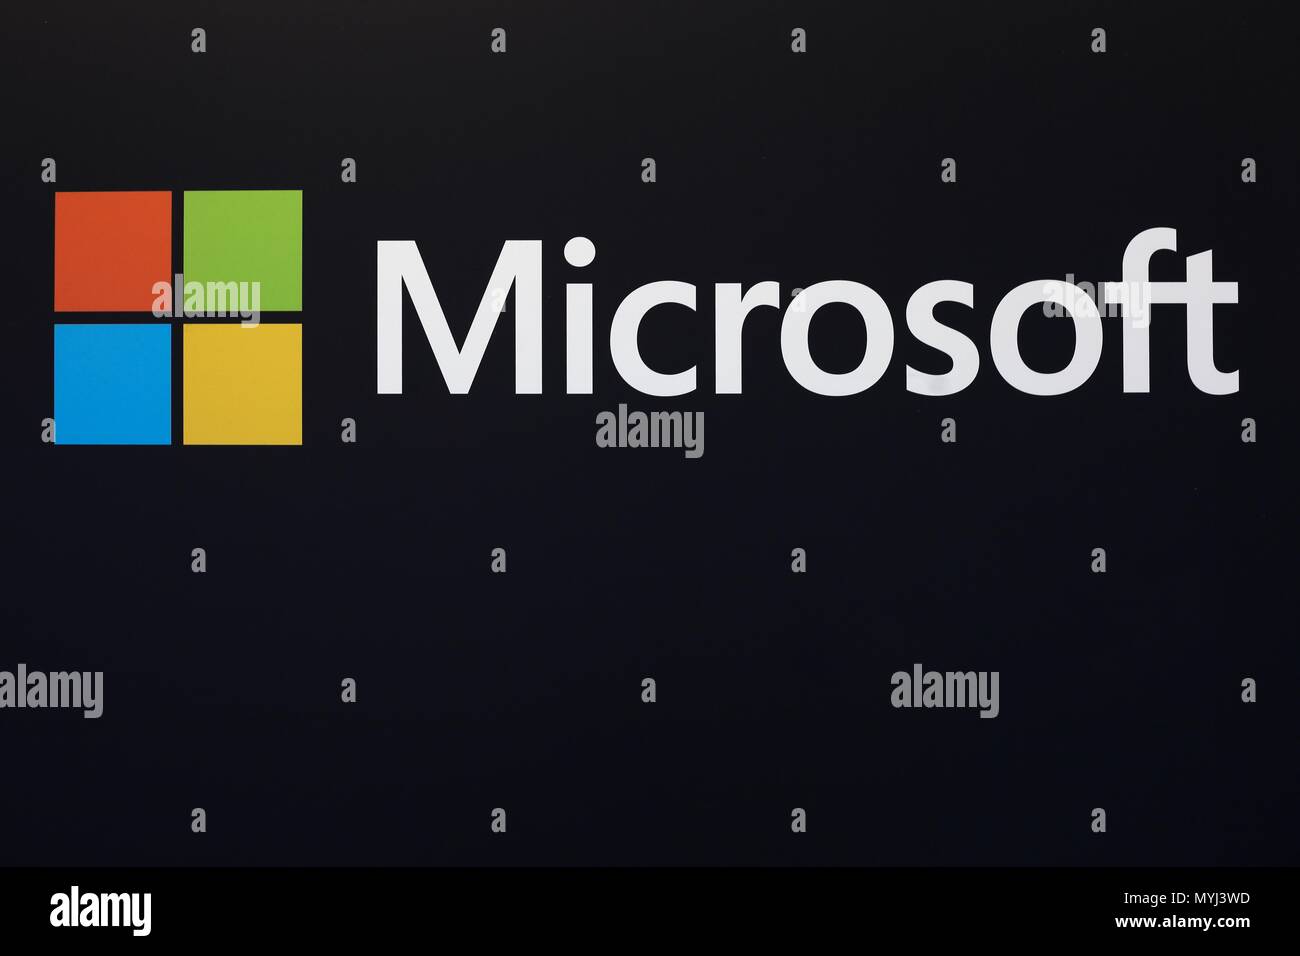 Amsterdam, Pays-Bas - 1 Février 2016 : Logo Microsoft sur un mur. Microsoft est une multinationale américaine technology company Banque D'Images